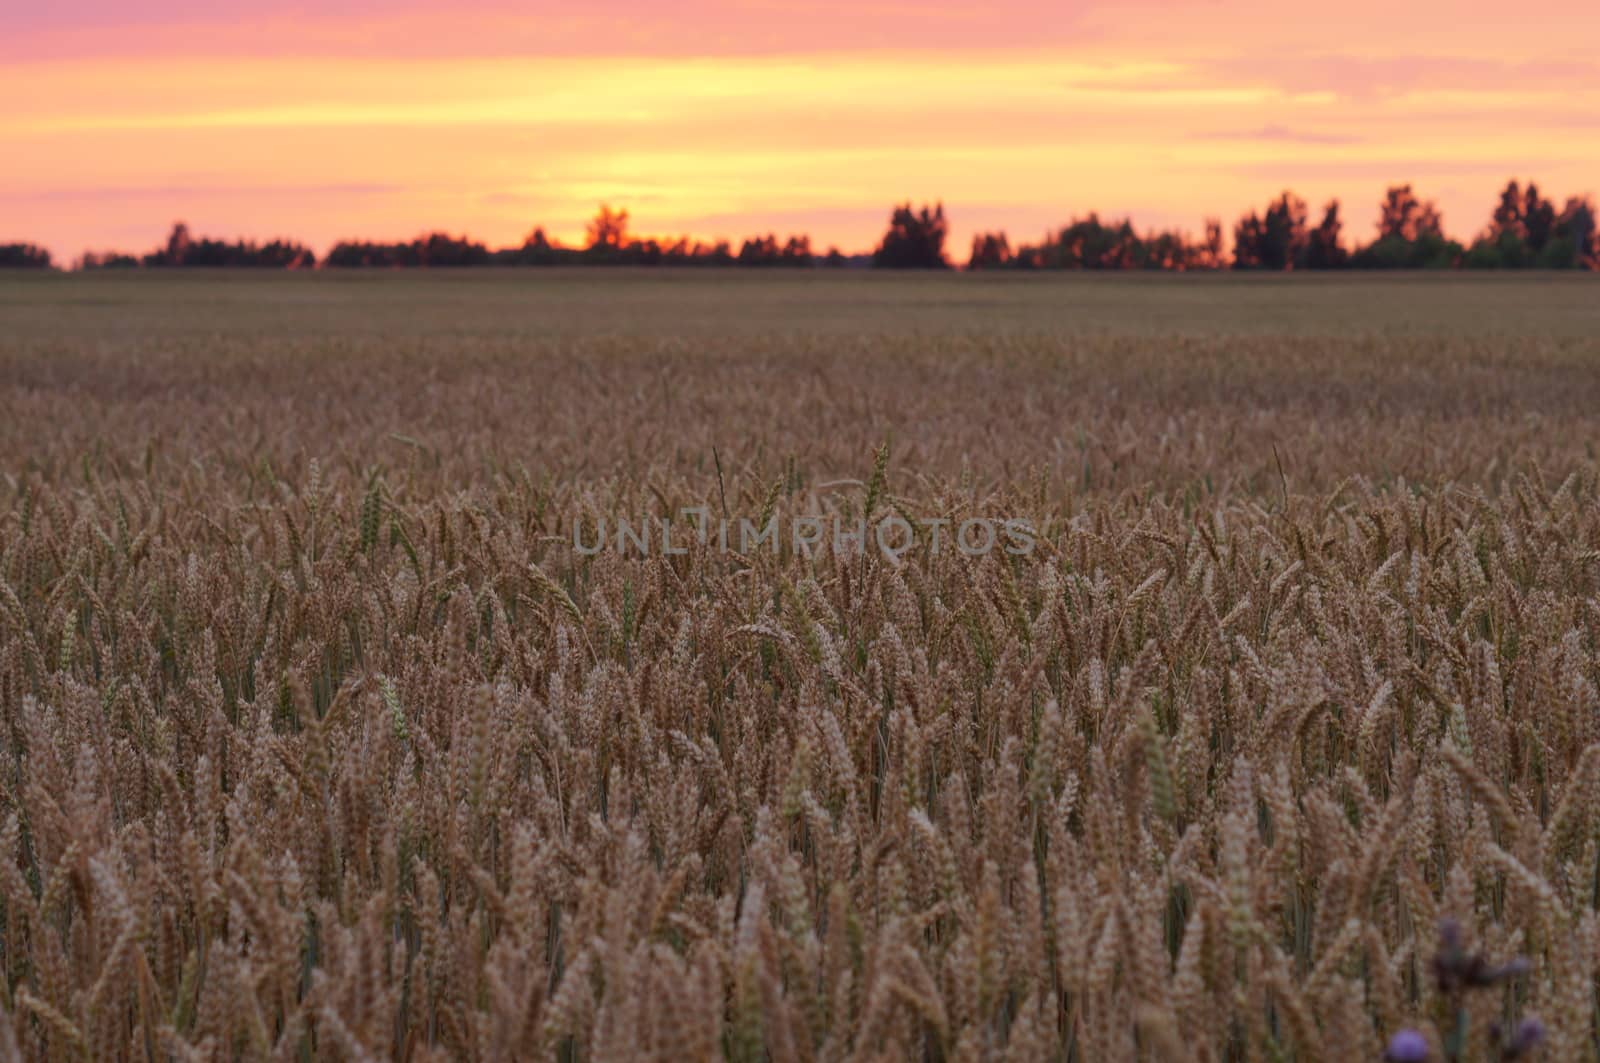 Wheat dusk down